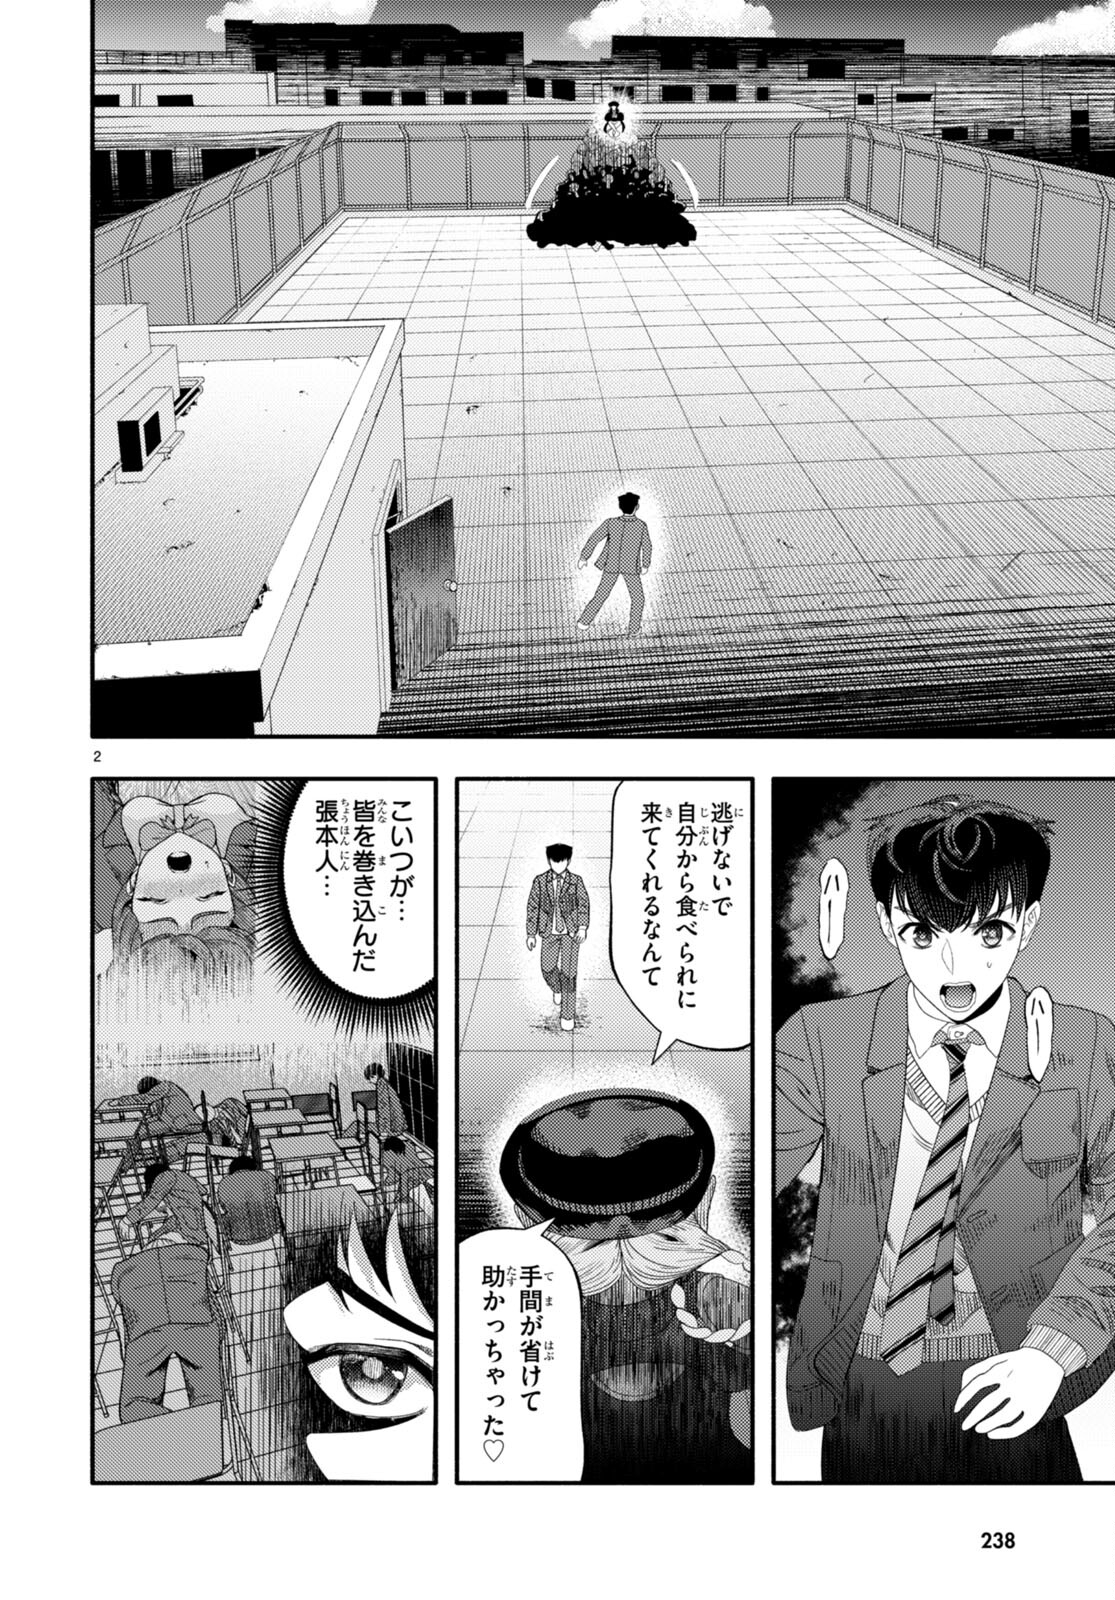 Akuma wa Rozario ni Kiss wo suru - Chapter 5 - Page 2